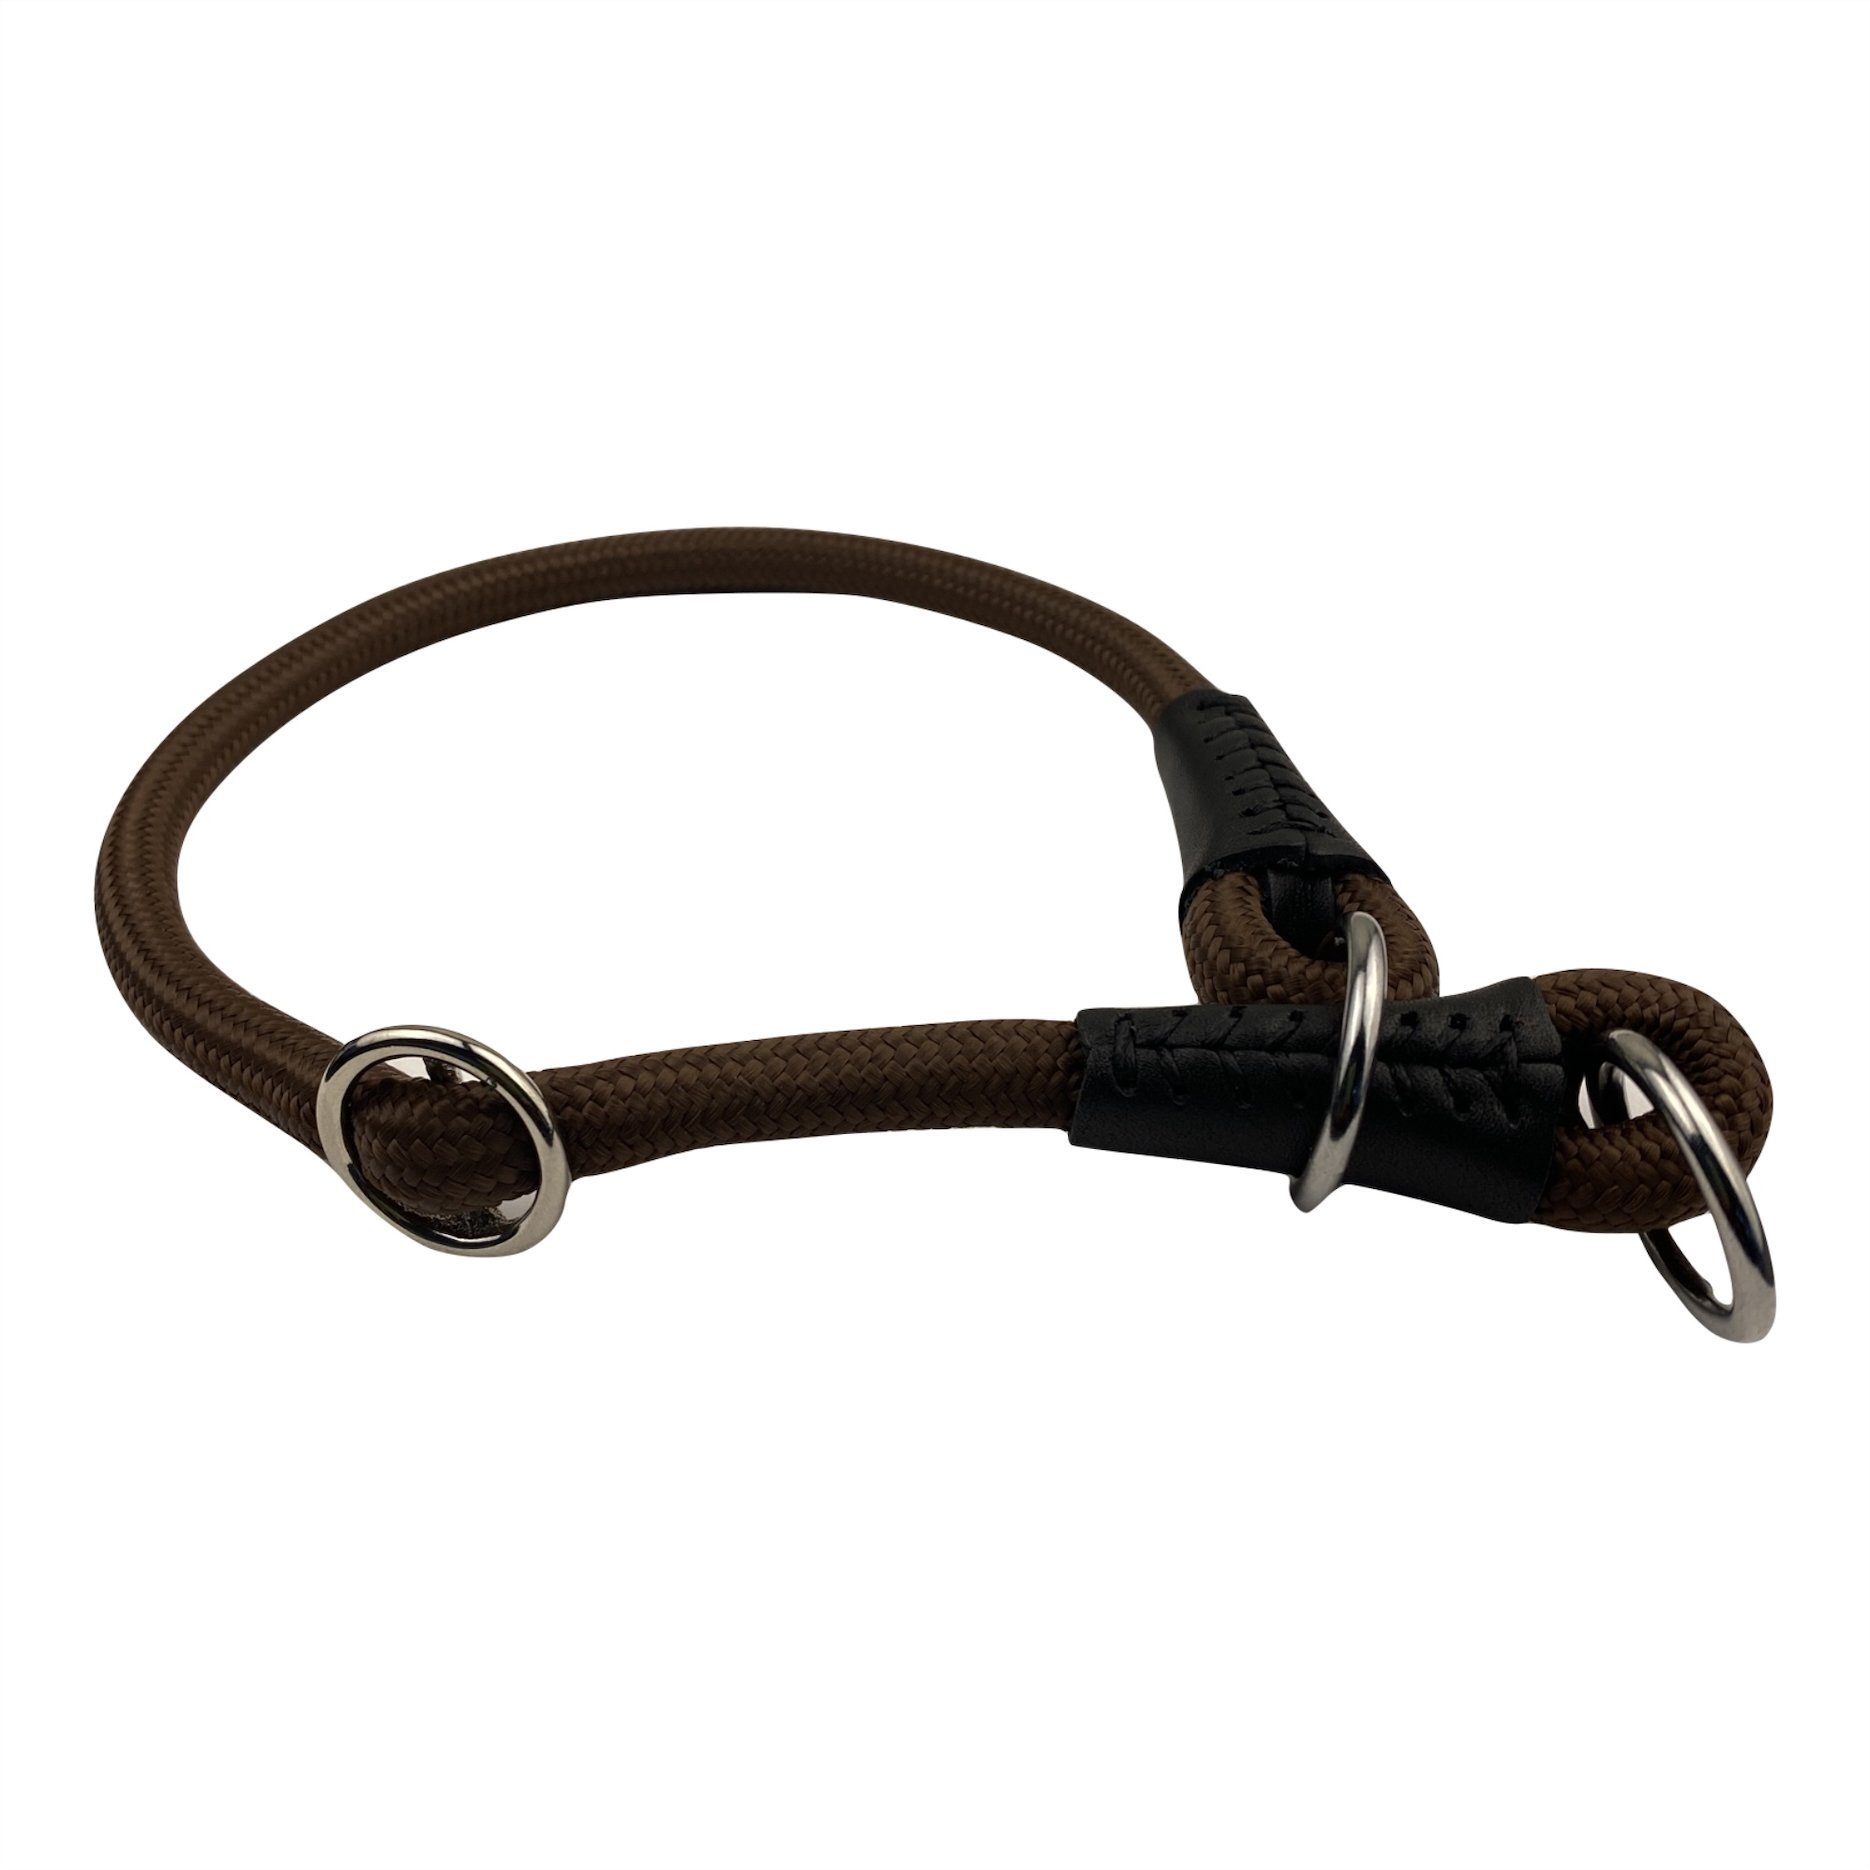 MediMuc Hunde-Halsband Soft Cord - Hundehalsband mit Zugbegrenzung, Nylon Halsung, Zugstopper, einstellbar, robust, wetterfest, innen textilverstärkt und Endkappen aus Leder